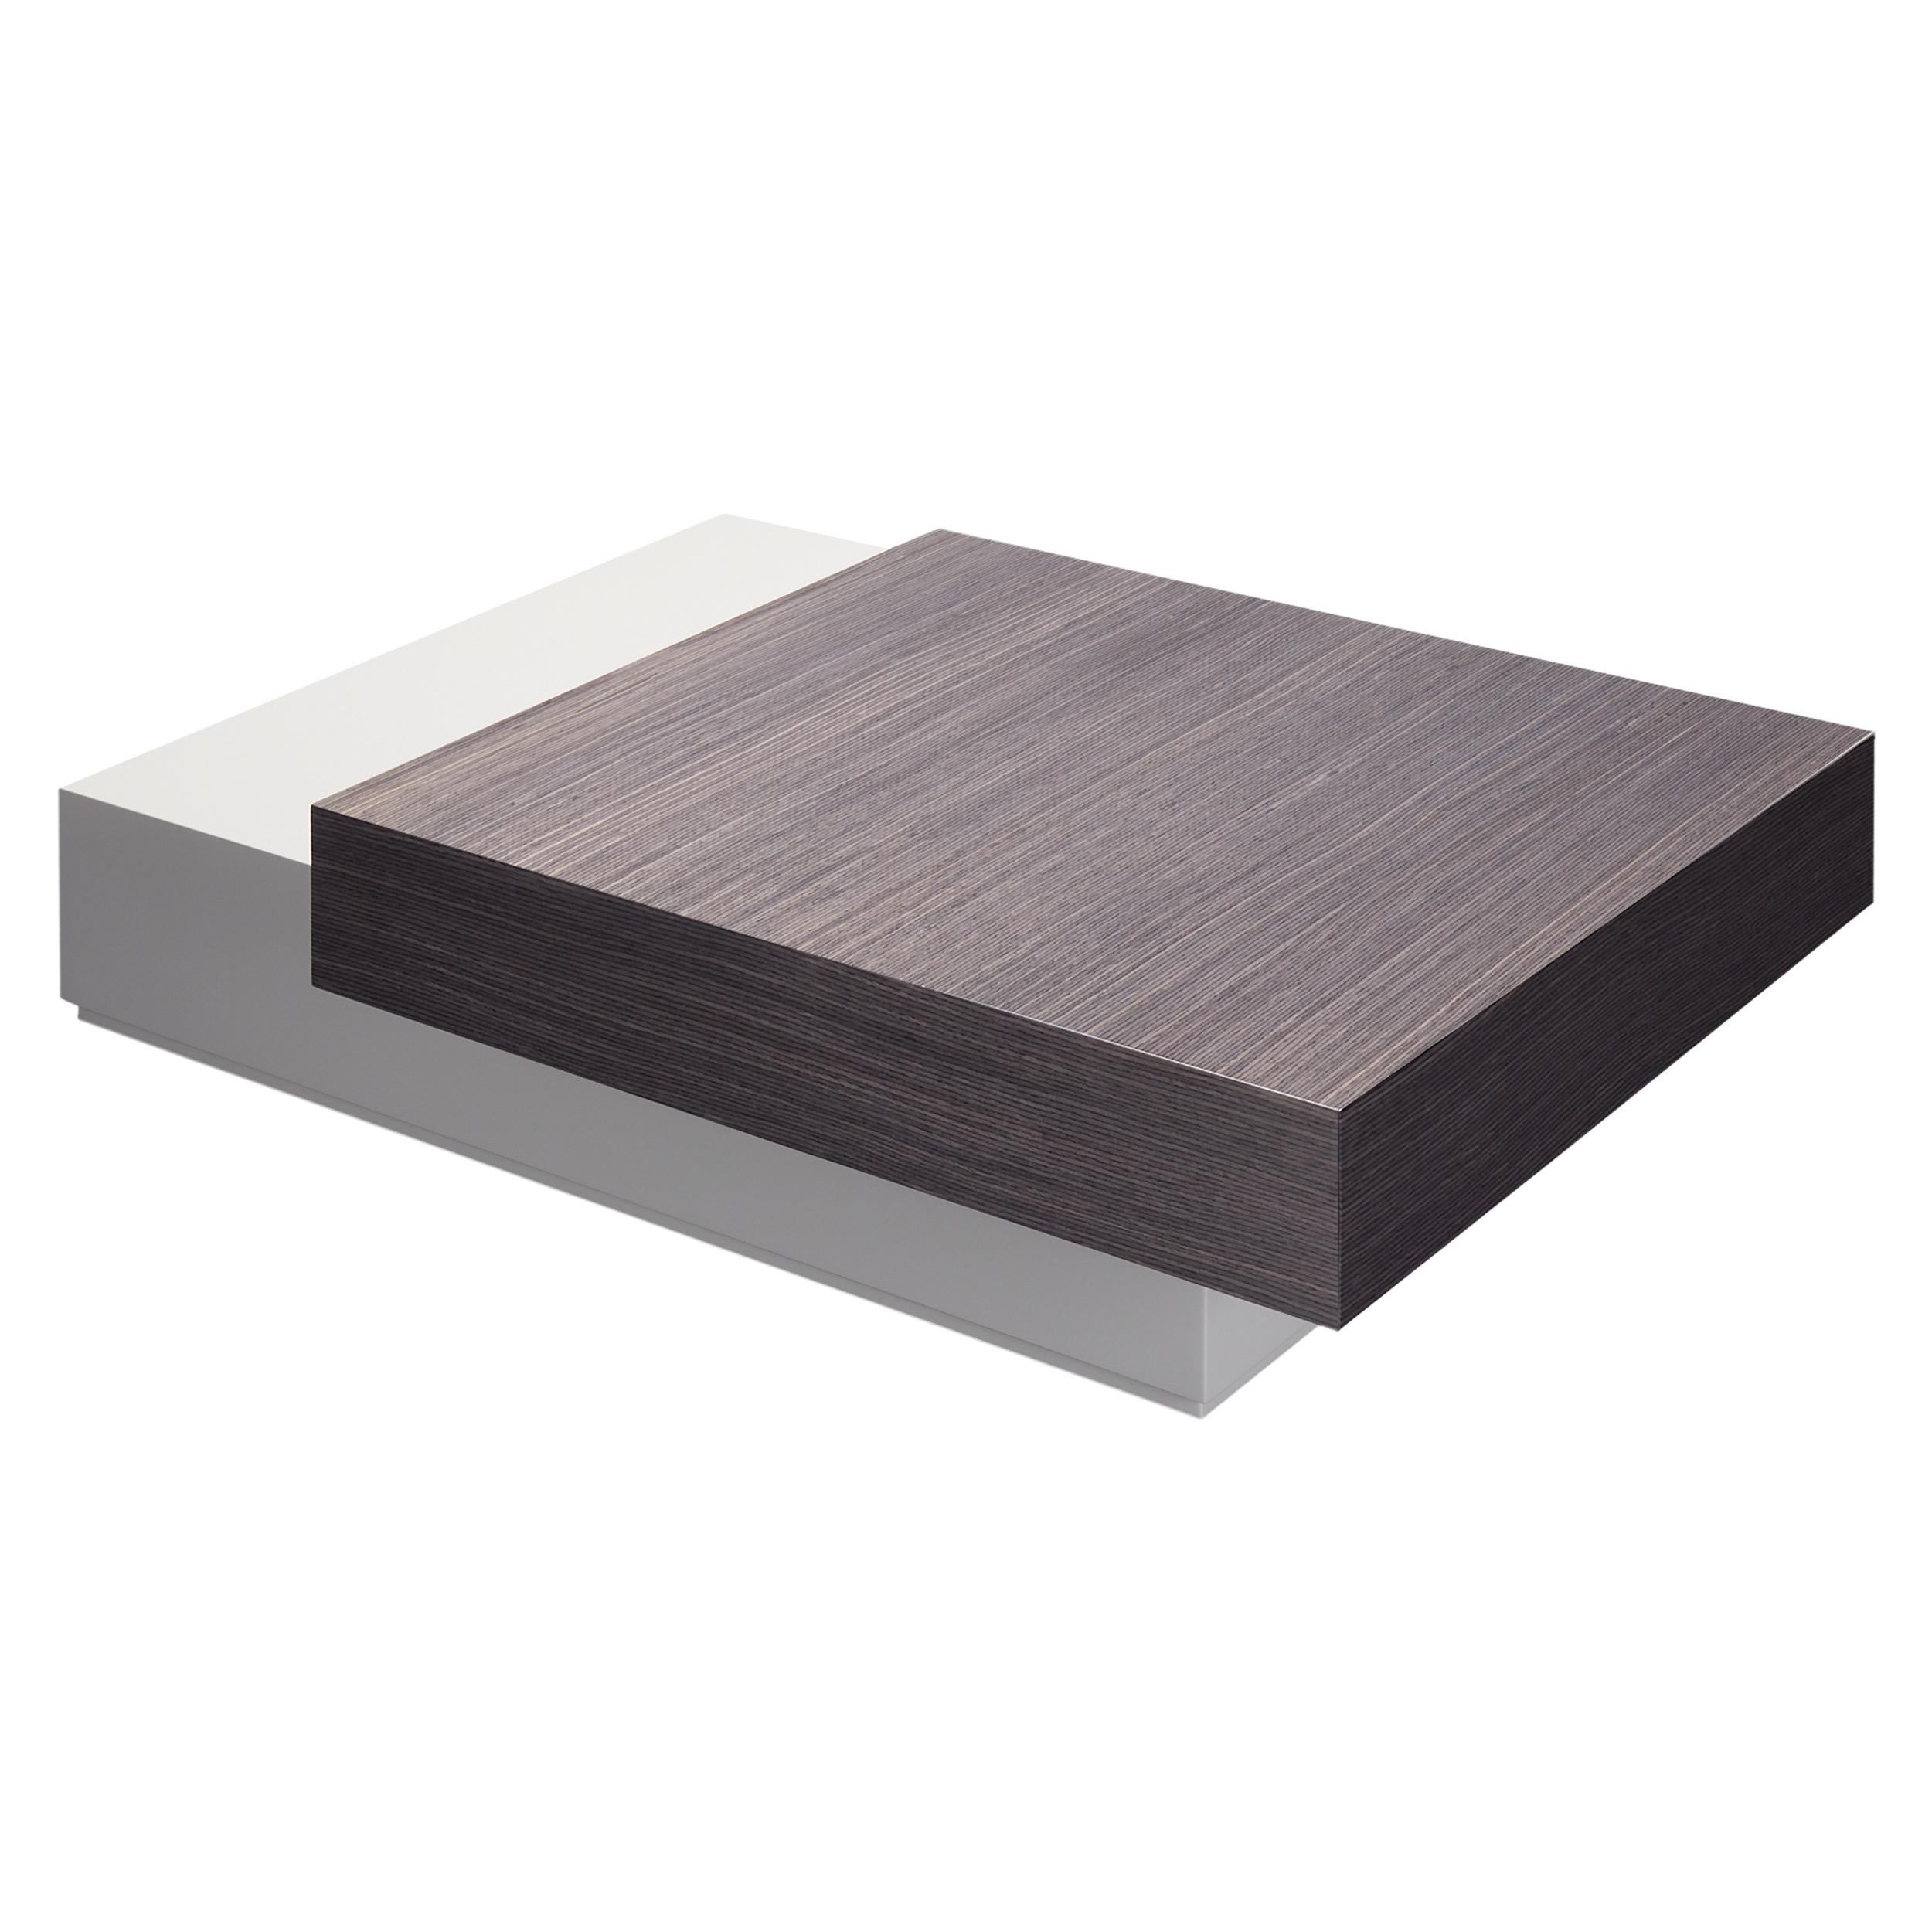 La table basse Dickens, avec ses deux tiroirs superposés, est fabriquée en bois laqué et plaqué, mais permet de multiples combinaisons de finitions pour répondre à tous les besoins de design

Représenté avec le tiroir supérieur Grisio Gris brillant,